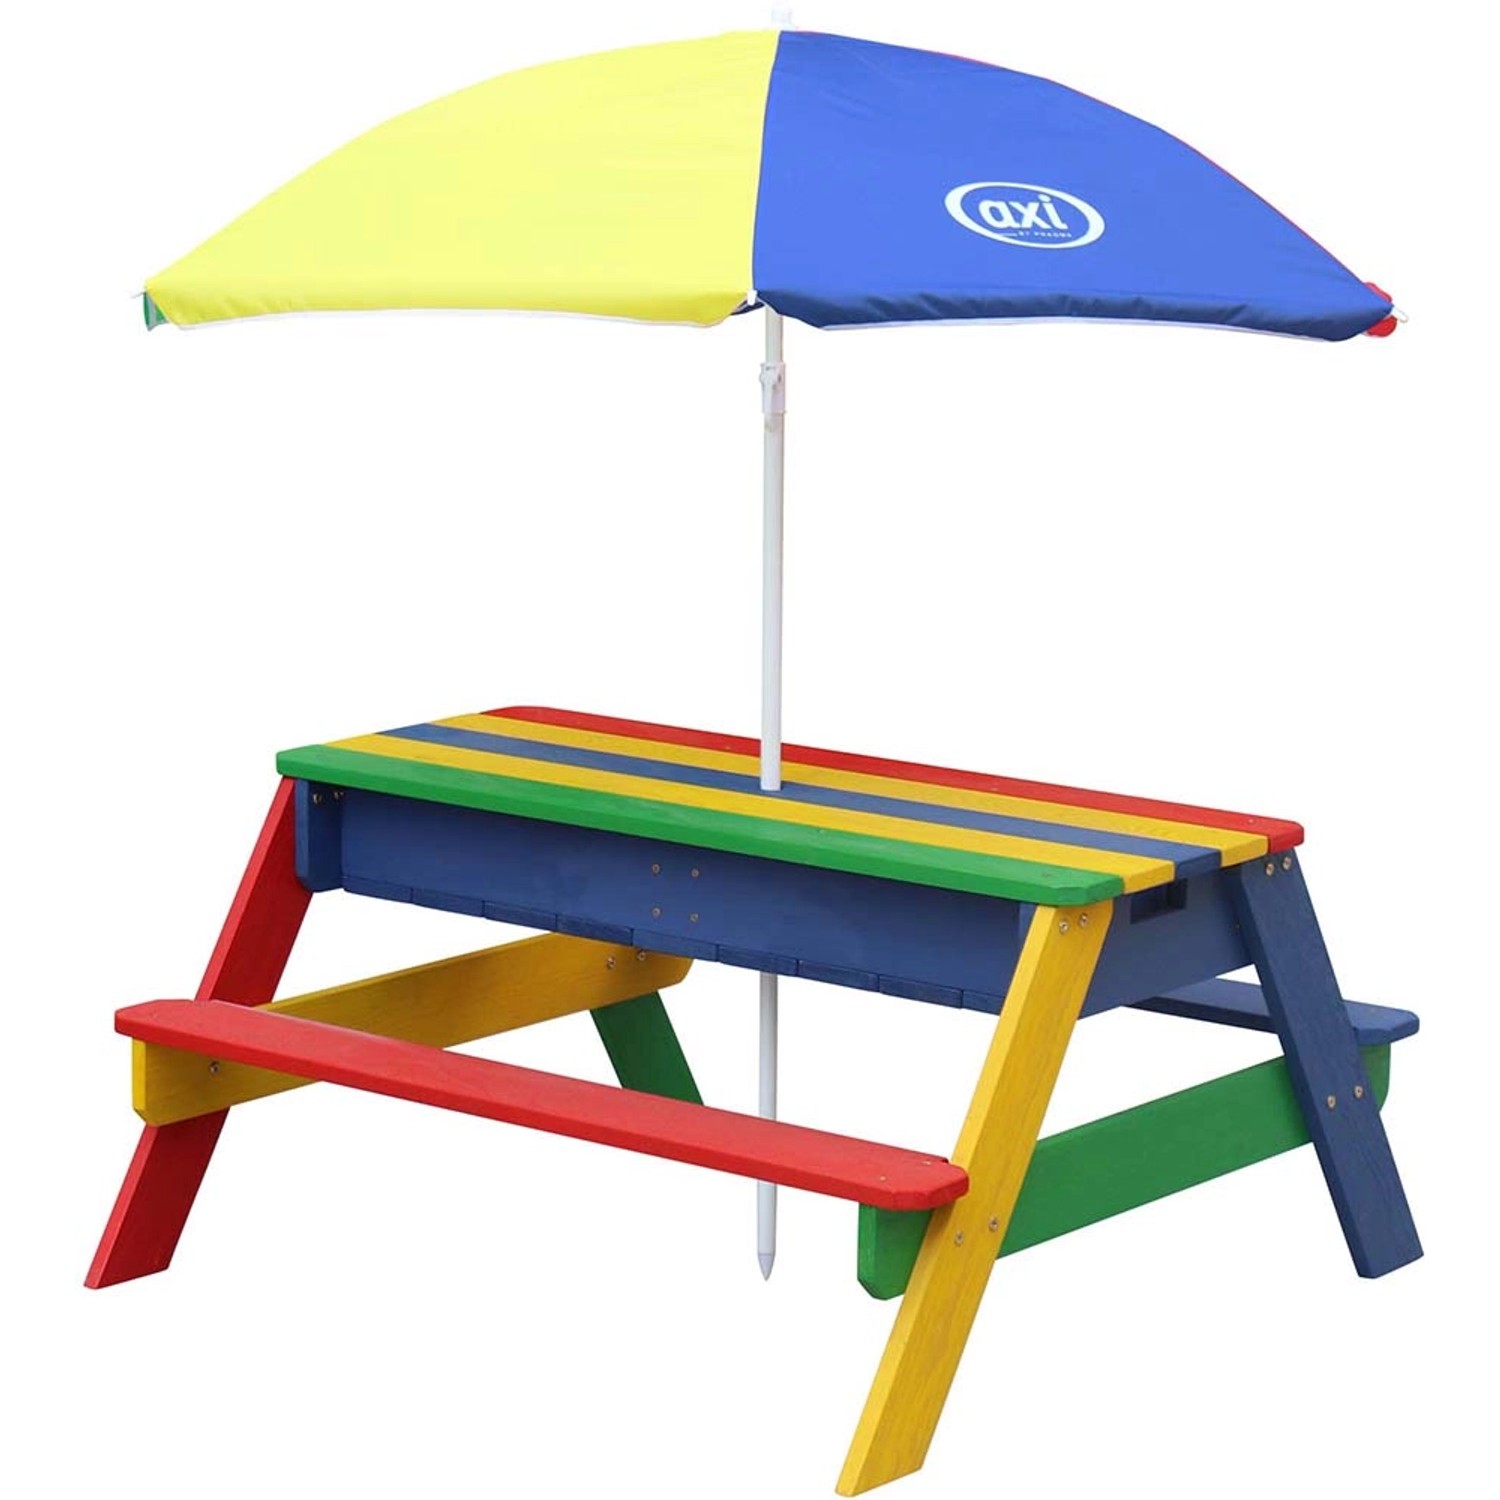 Axi Nick Sand & Wasser Picknicktisch Regenbogen mit Sonnenschirm